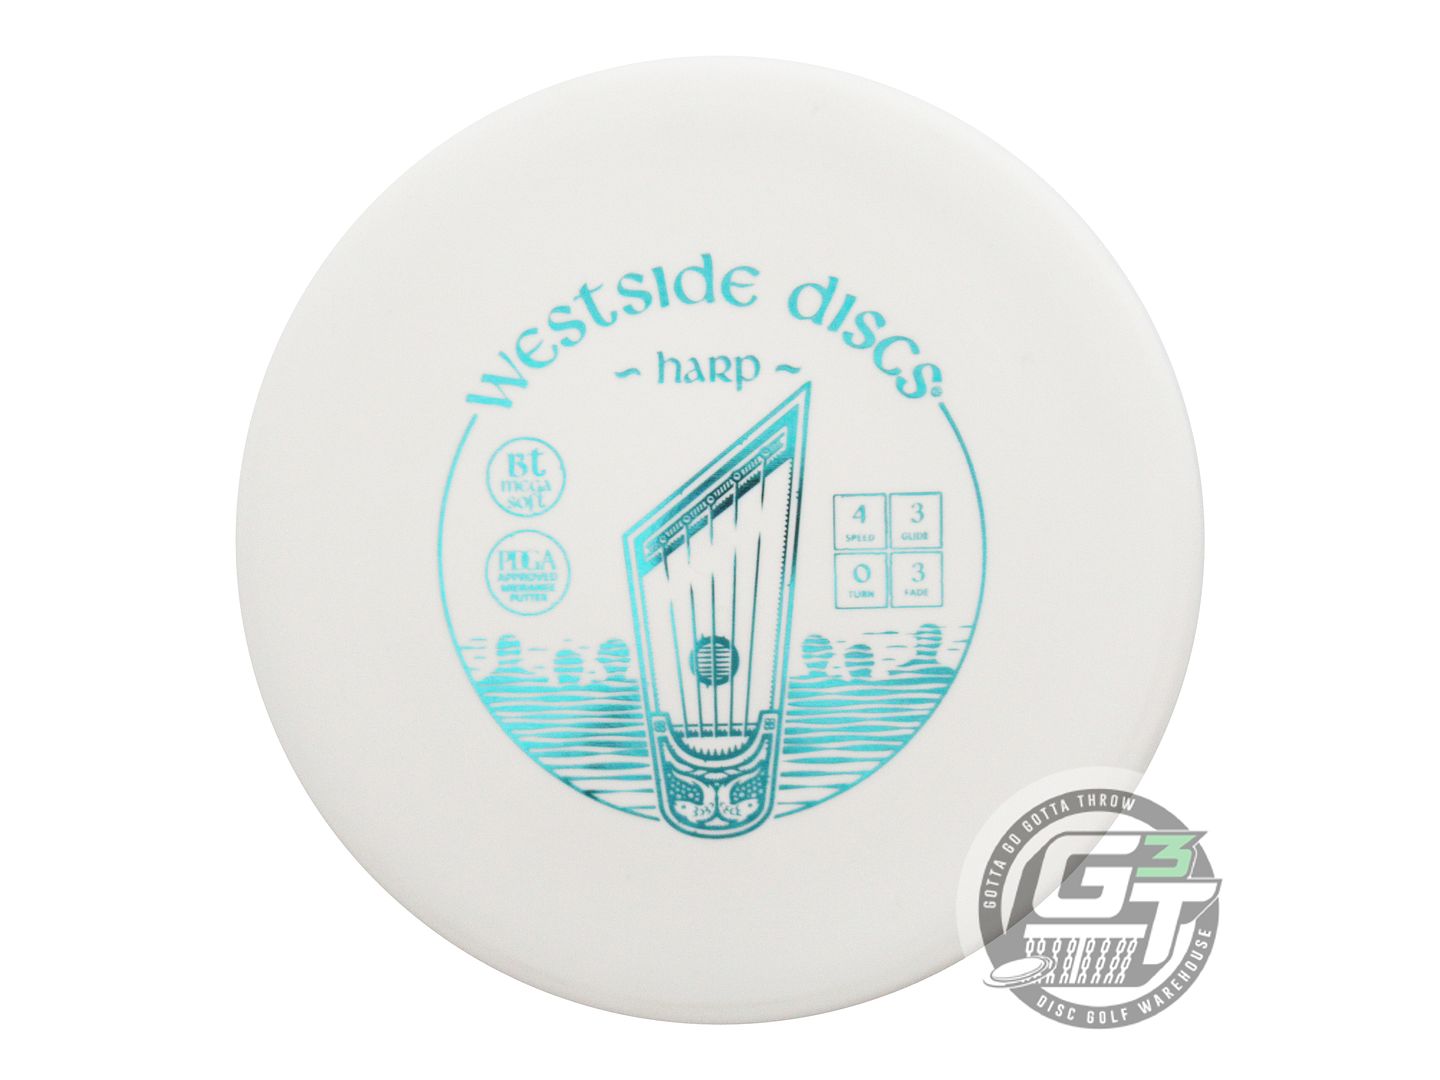 Westside BT Megasoft Harp Putter Golf Disc (Individually Listed)